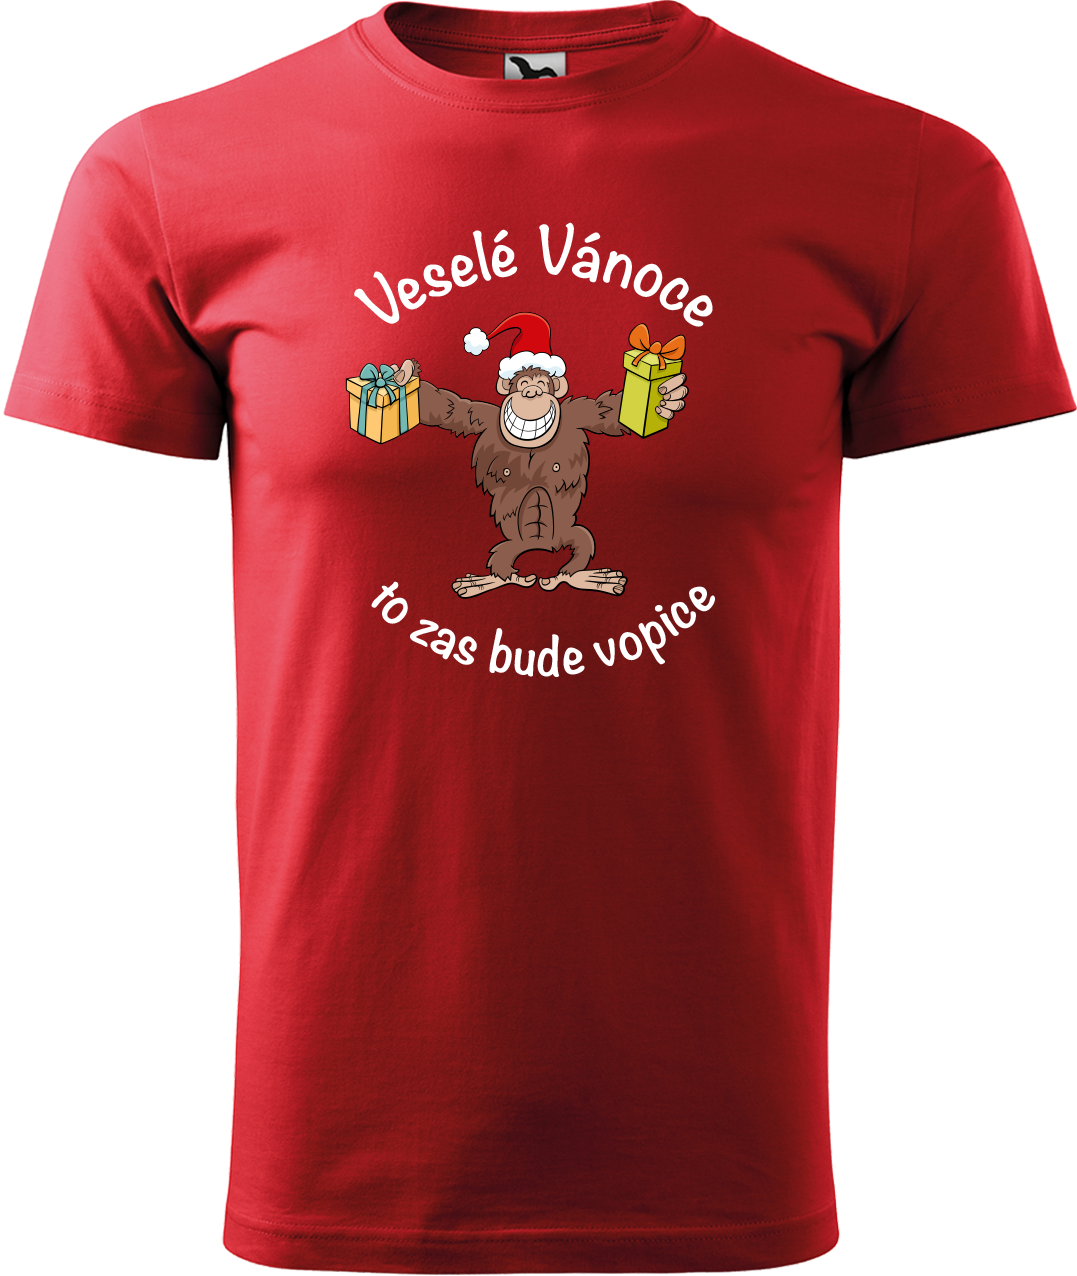 Pánské vánoční tričko - Veselé Vánoce to zas bude vopice (hnědý opičák) Velikost: 4XL, Barva: Červená (07)